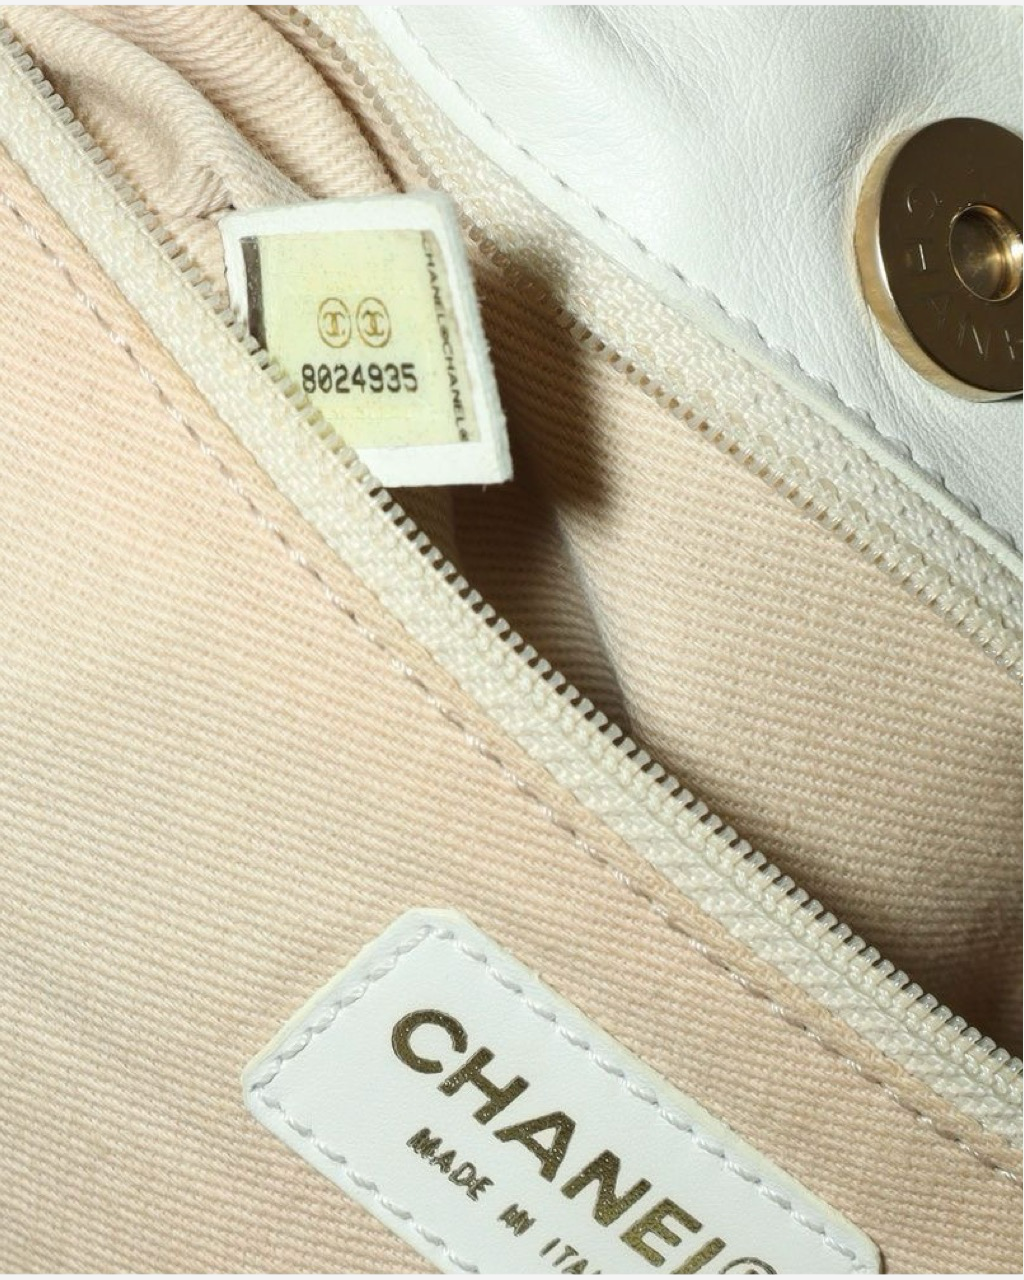 Chanel Olsen bag